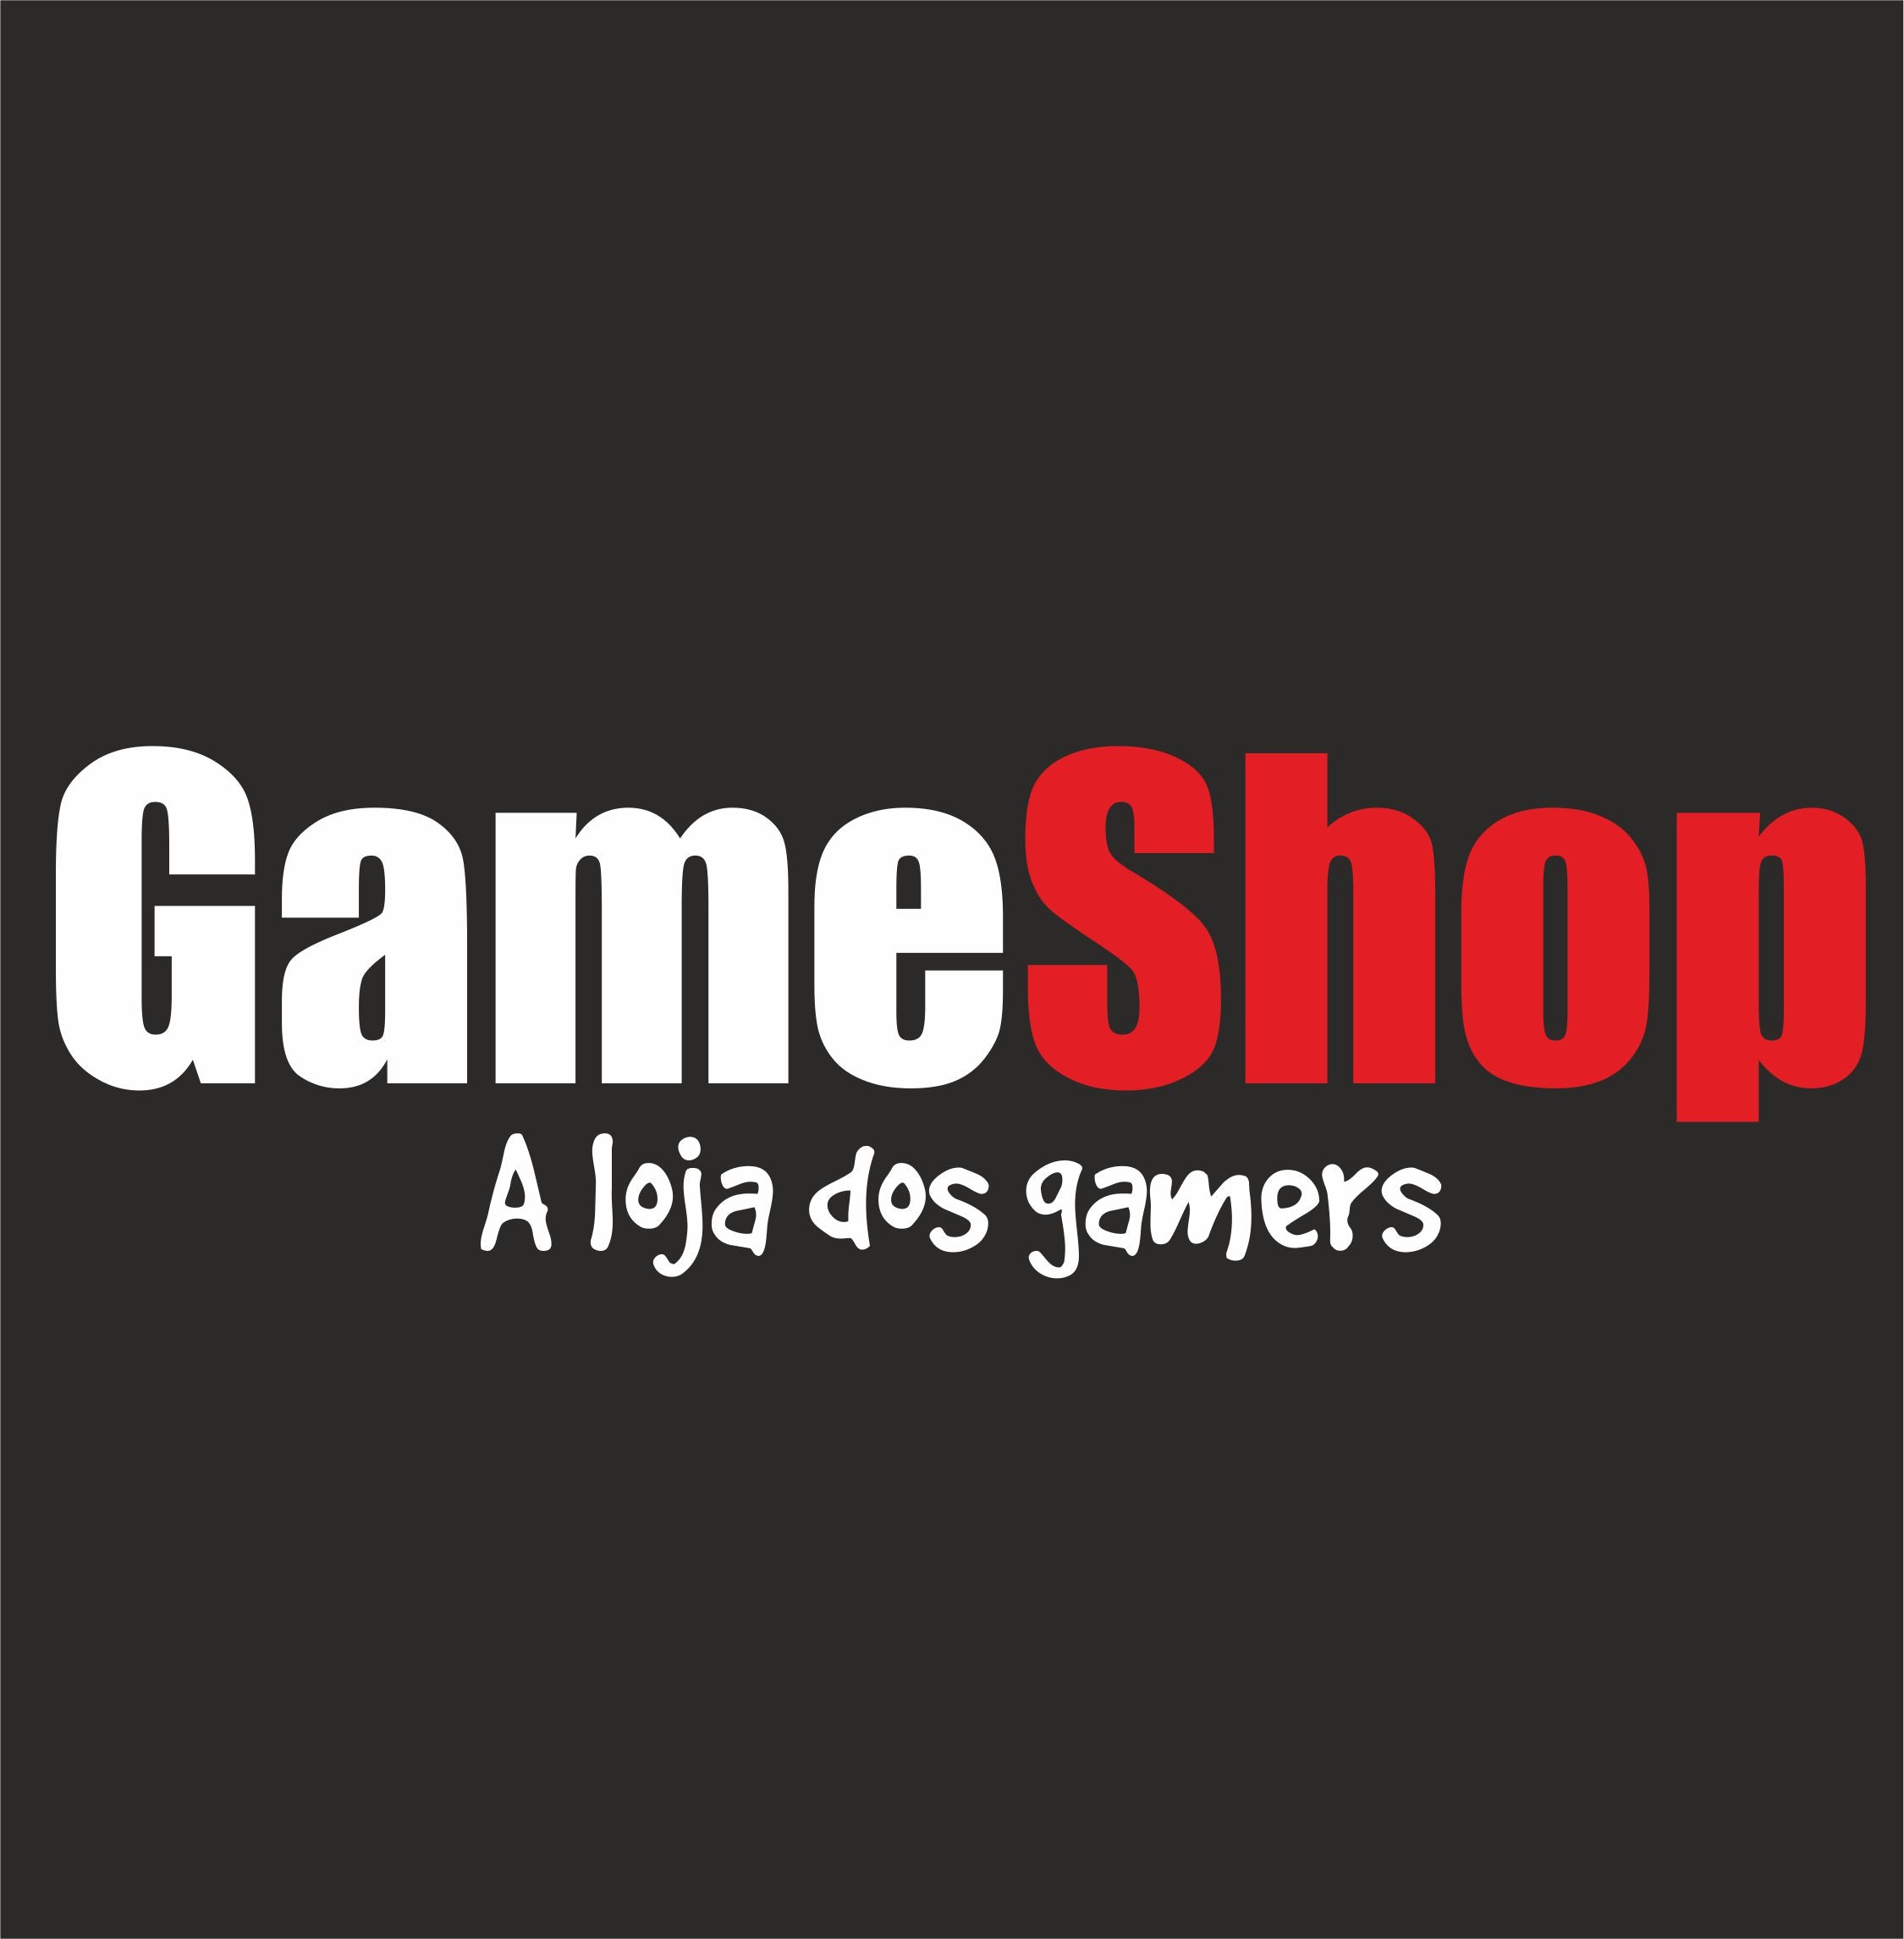 GameShopp